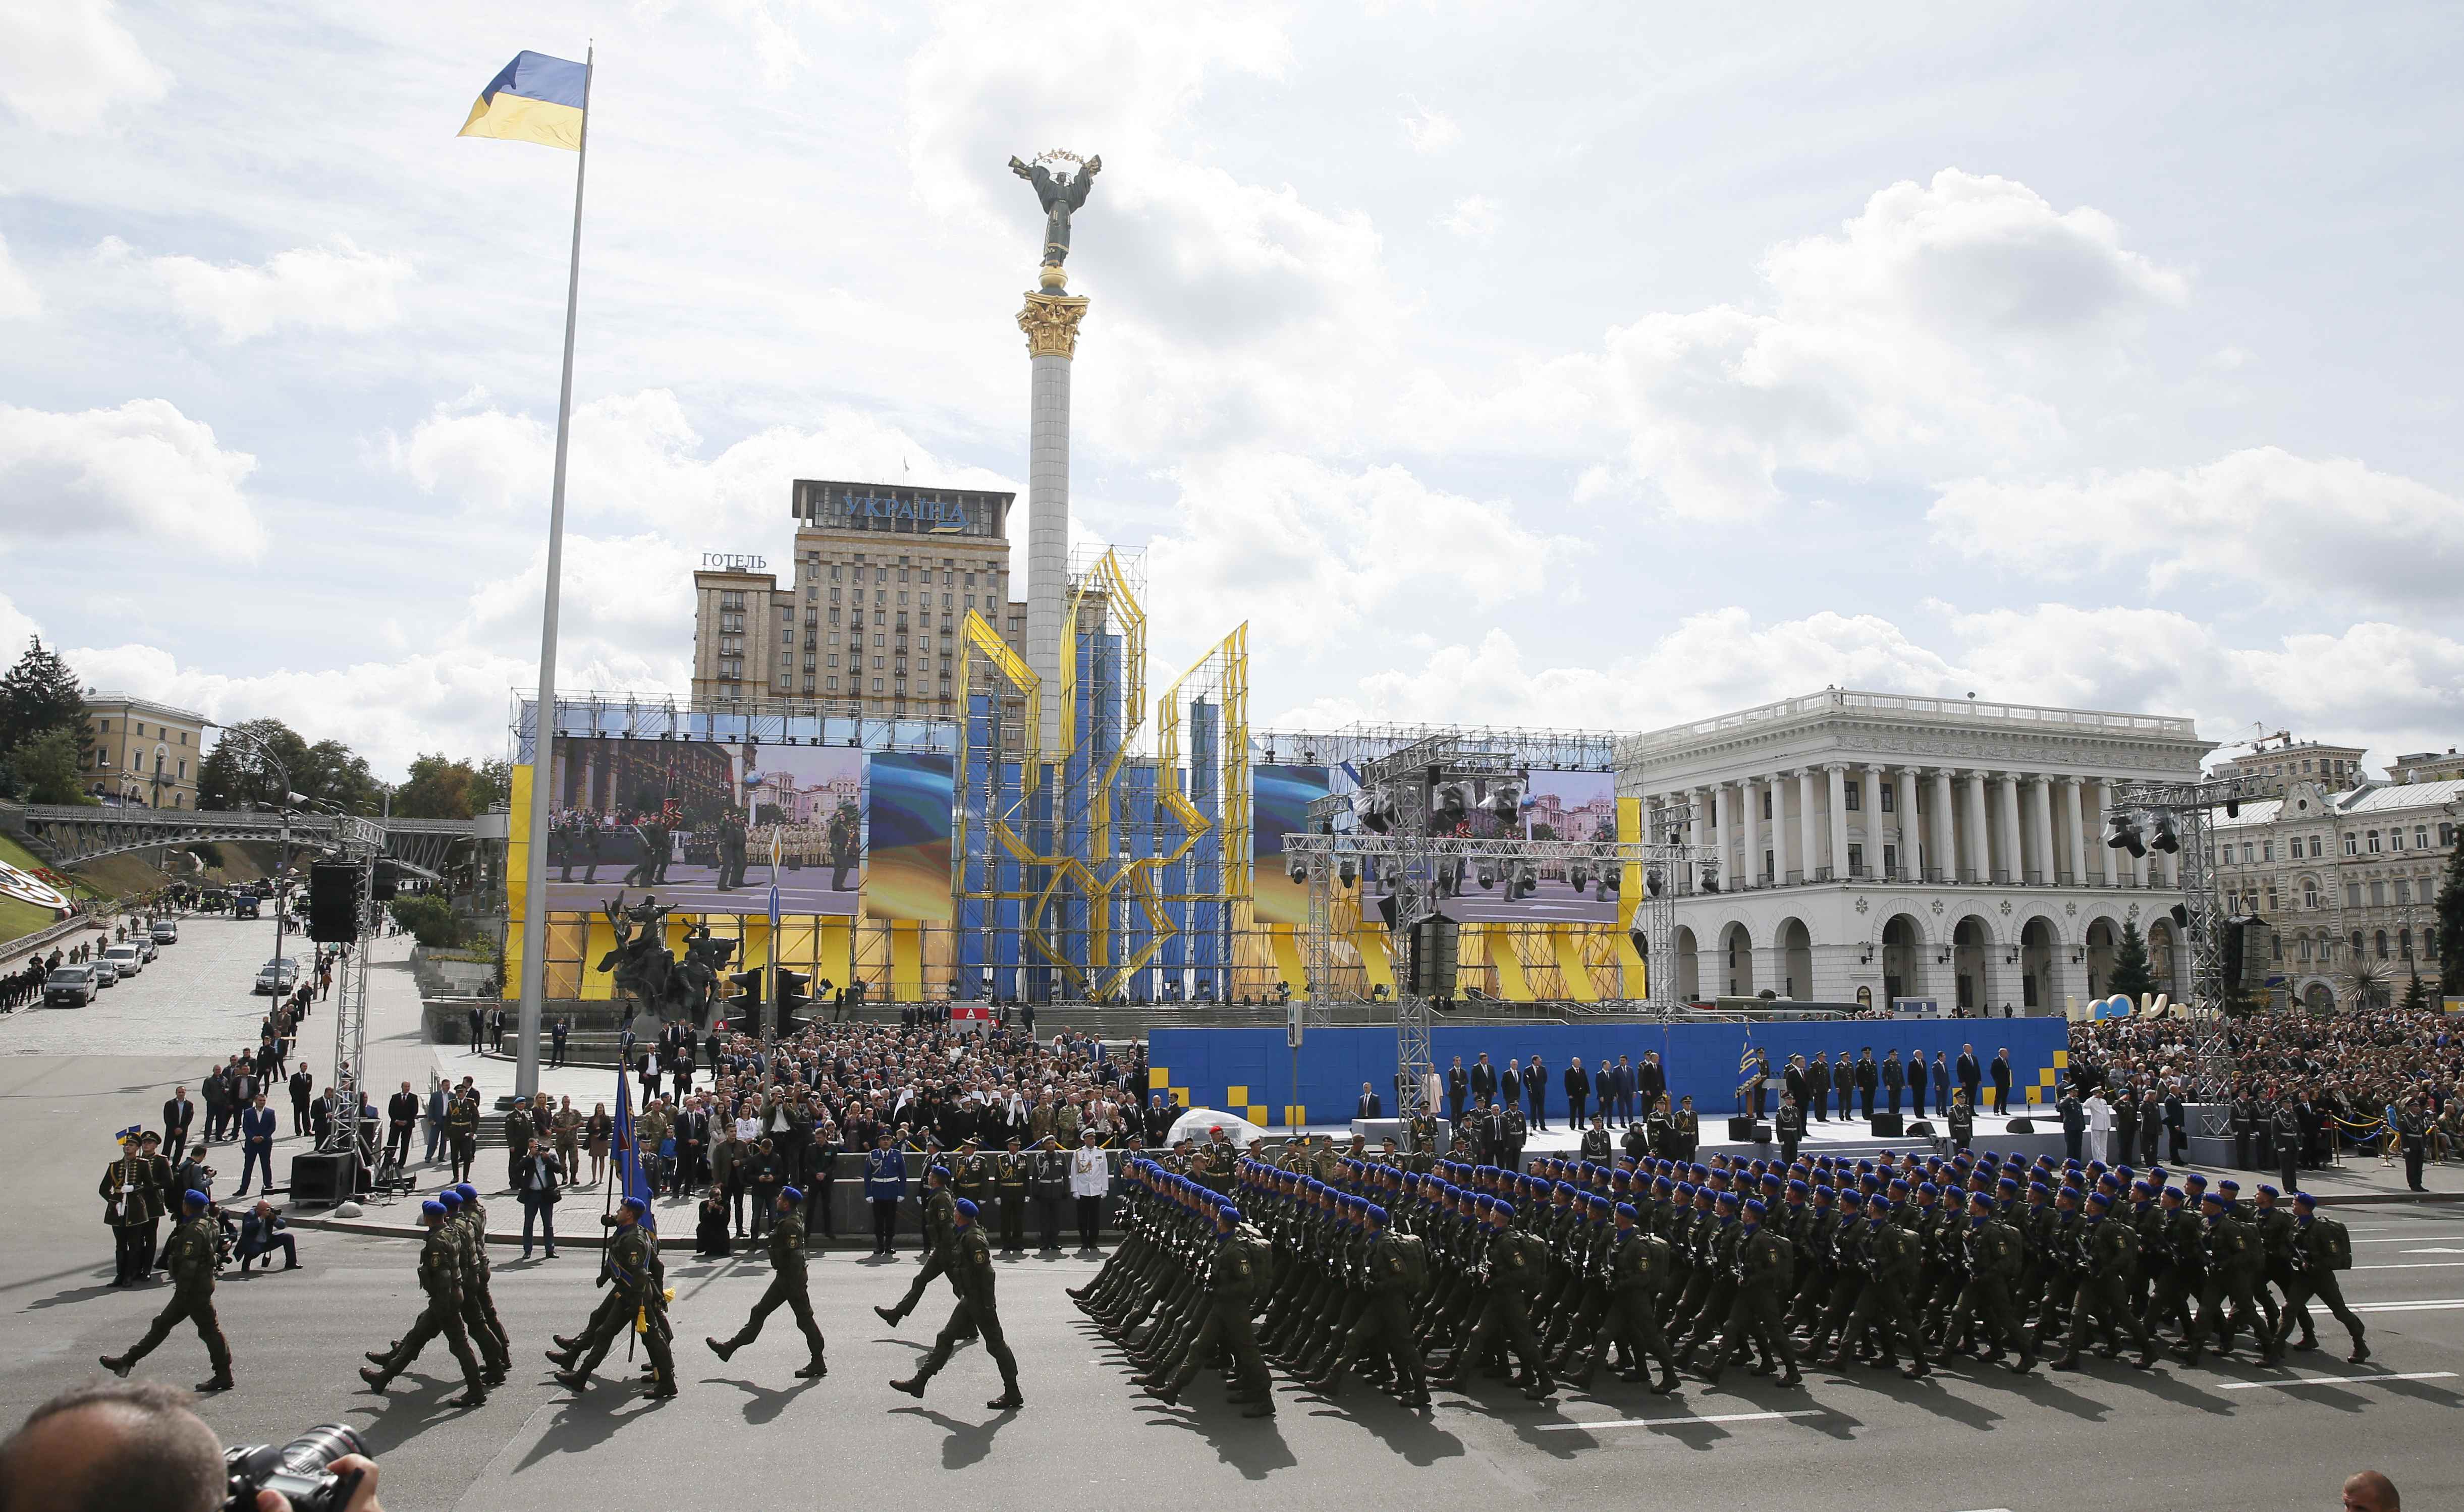 عروض عسكرية للاحتفال بذكرى استقلال أوكرانيا